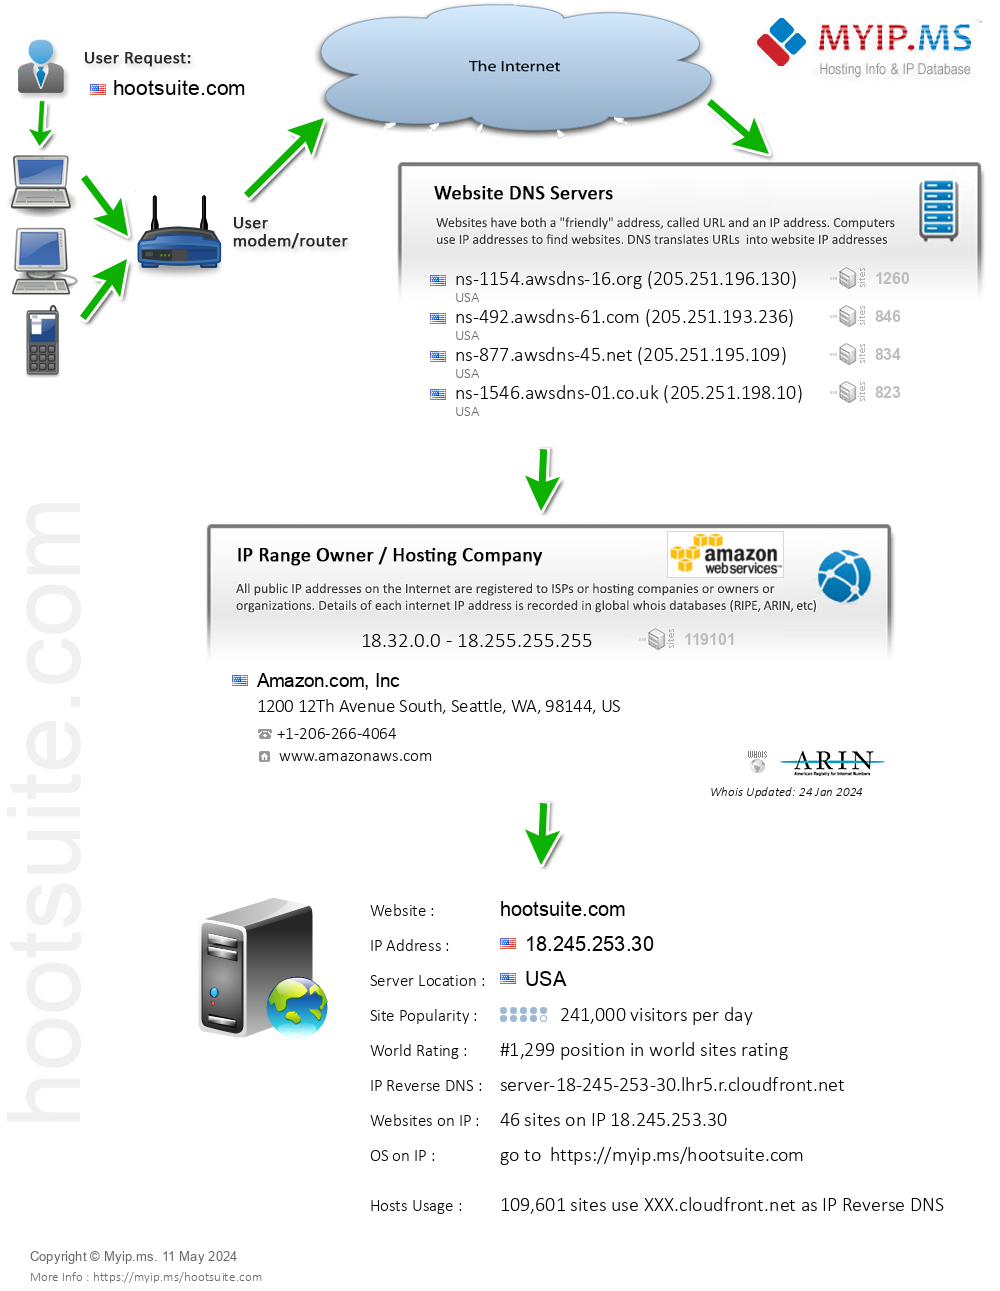 Hootsuite.com - Website Hosting Visual IP Diagram